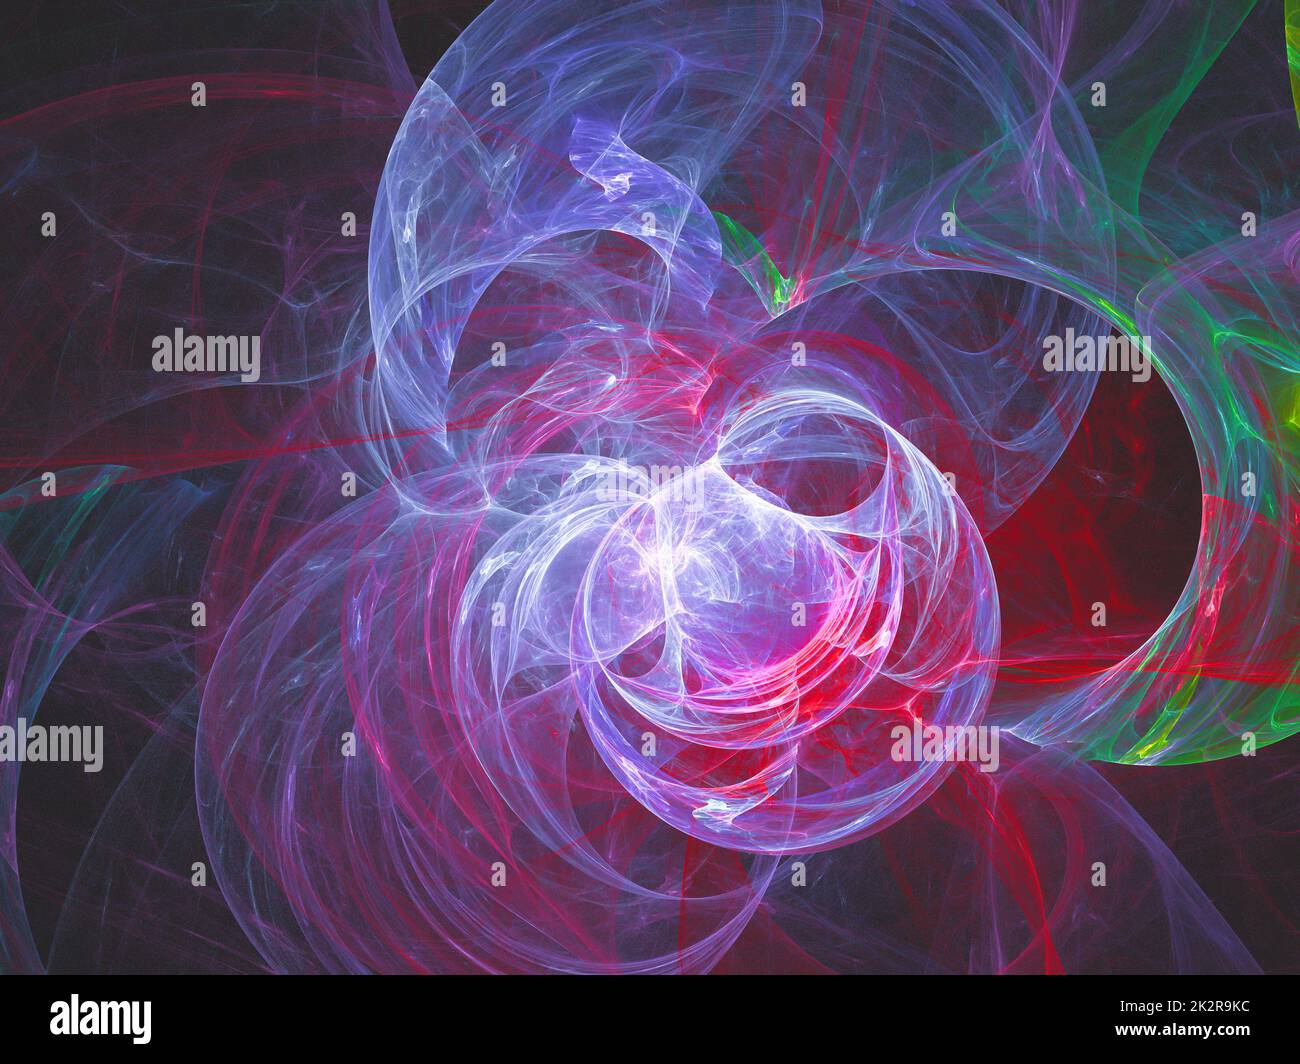 Arrière-plan abstrait de l'art fractal, évocateur de l'astronomie et de la nébuleuse. Nébuleuse d'illustration fractale générée par ordinateur. Banque D'Images